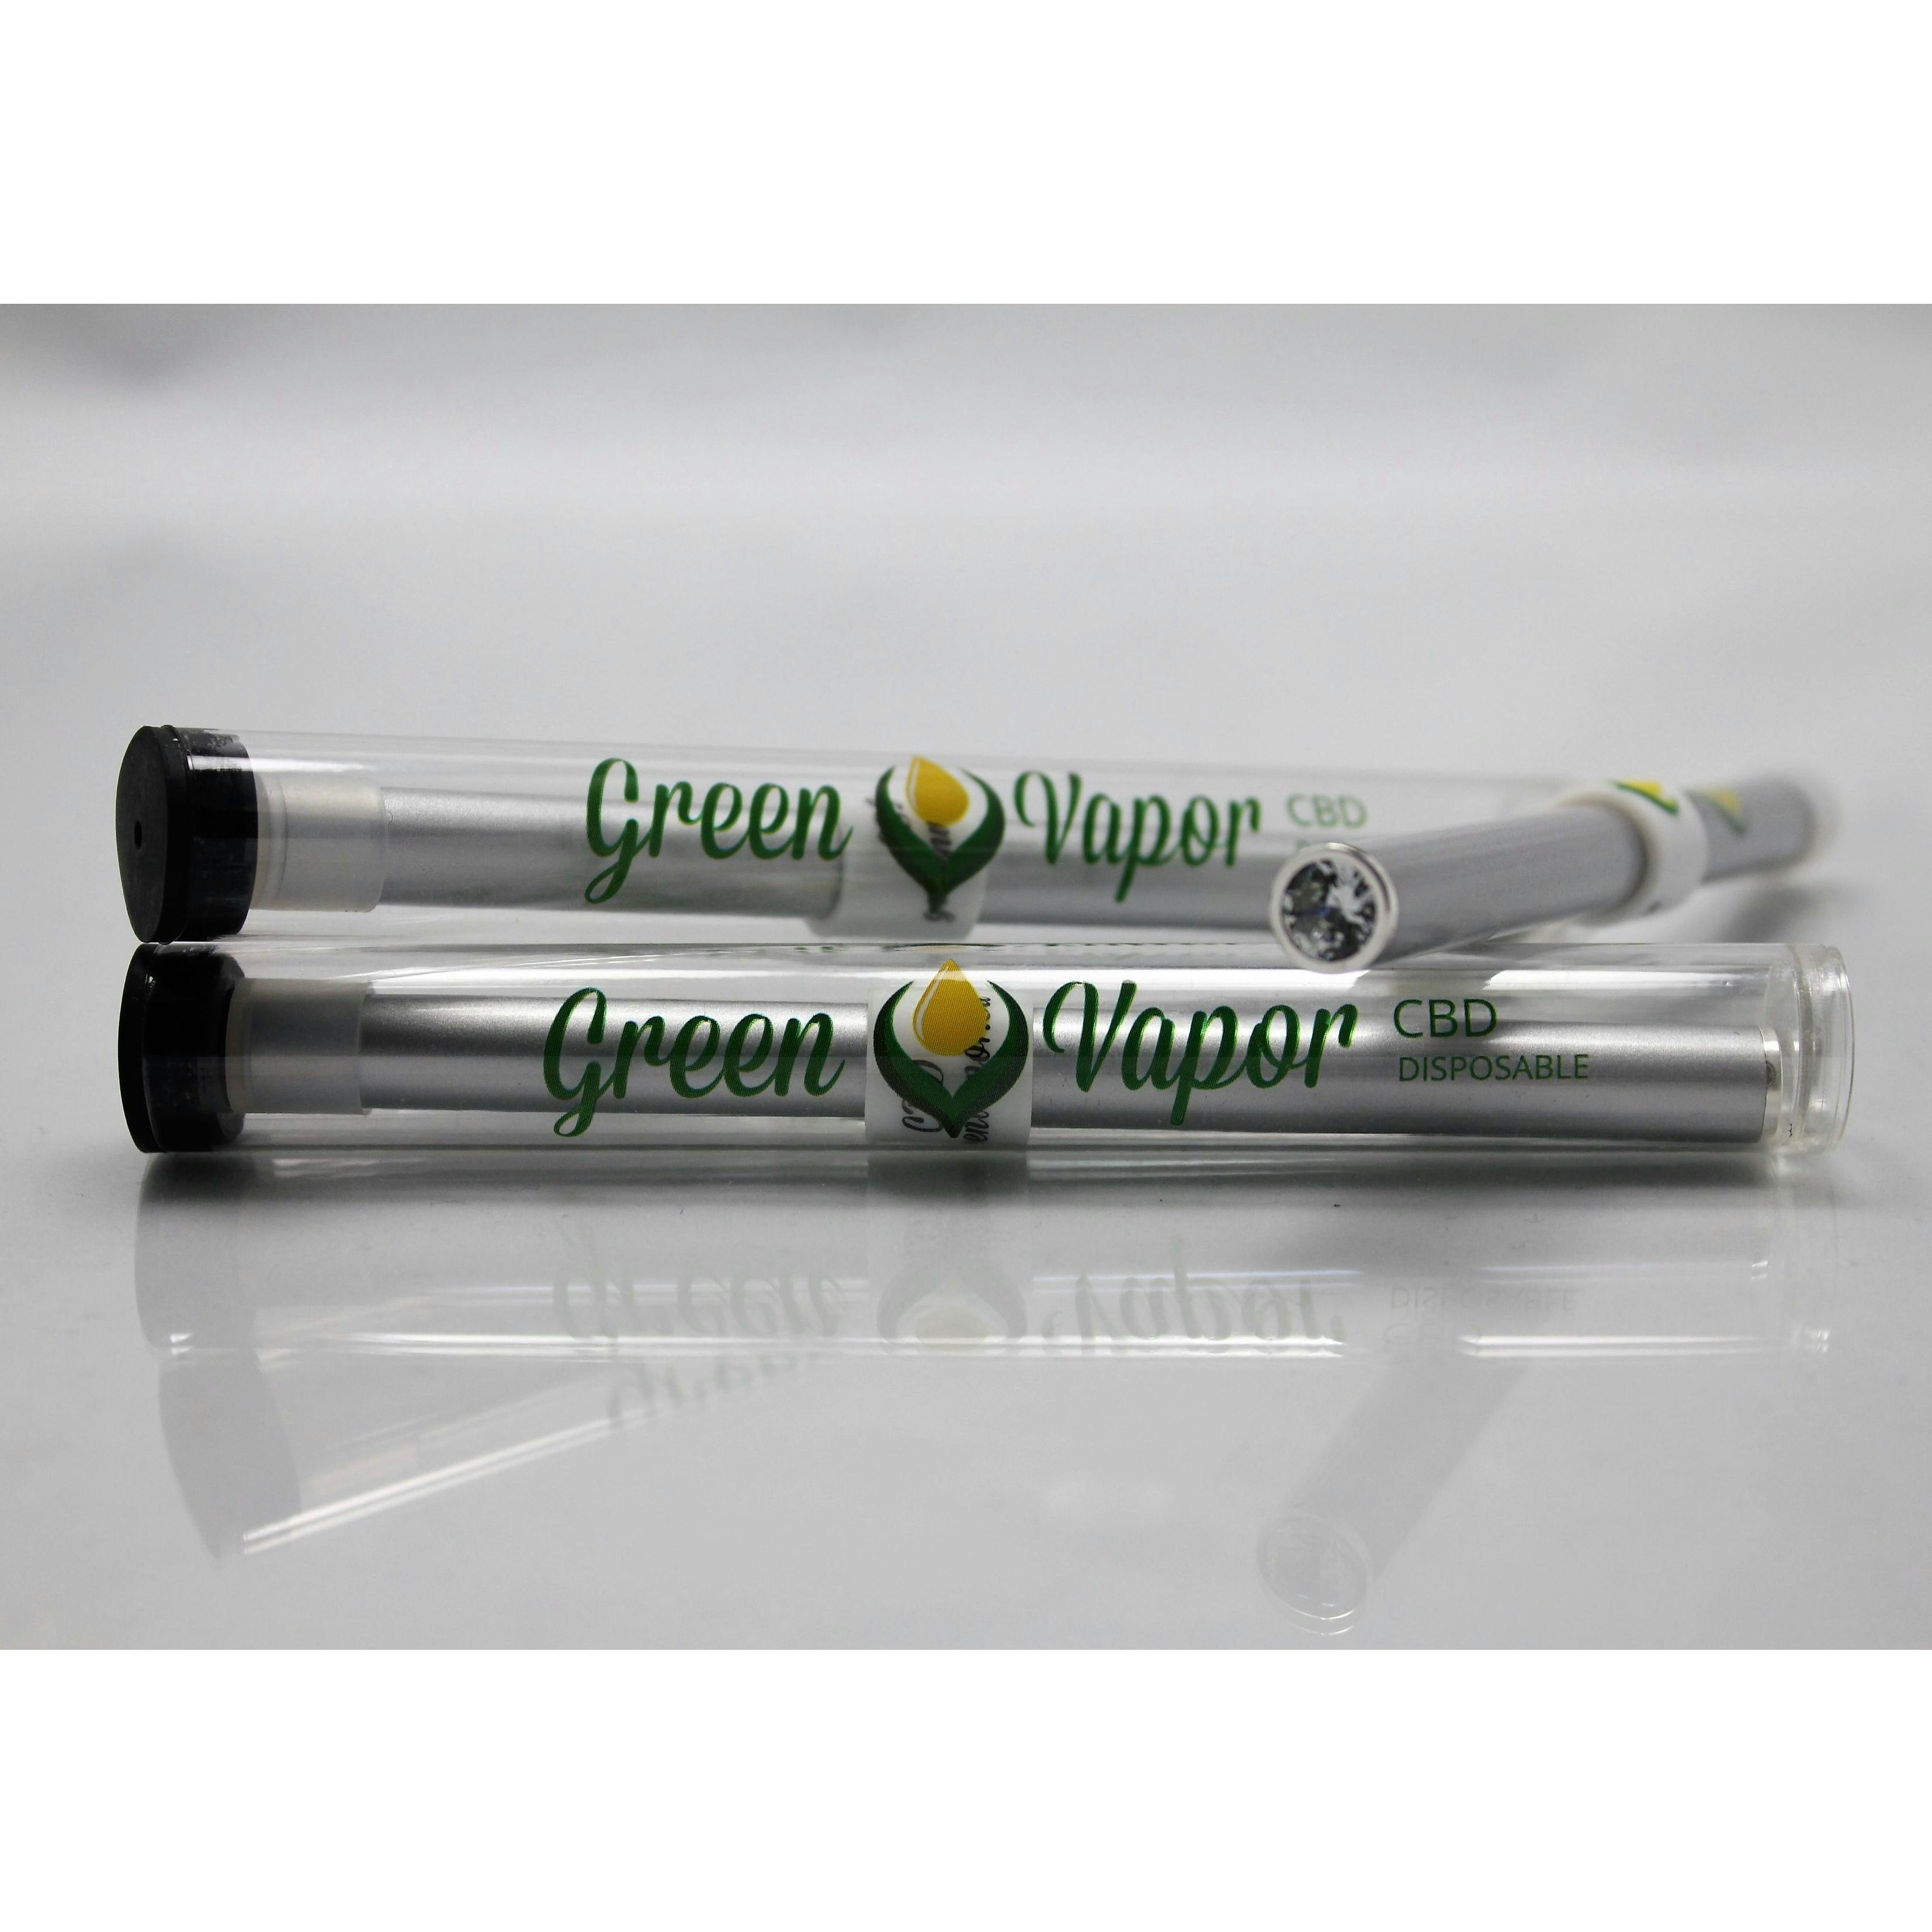 Green vapor cbd disposable